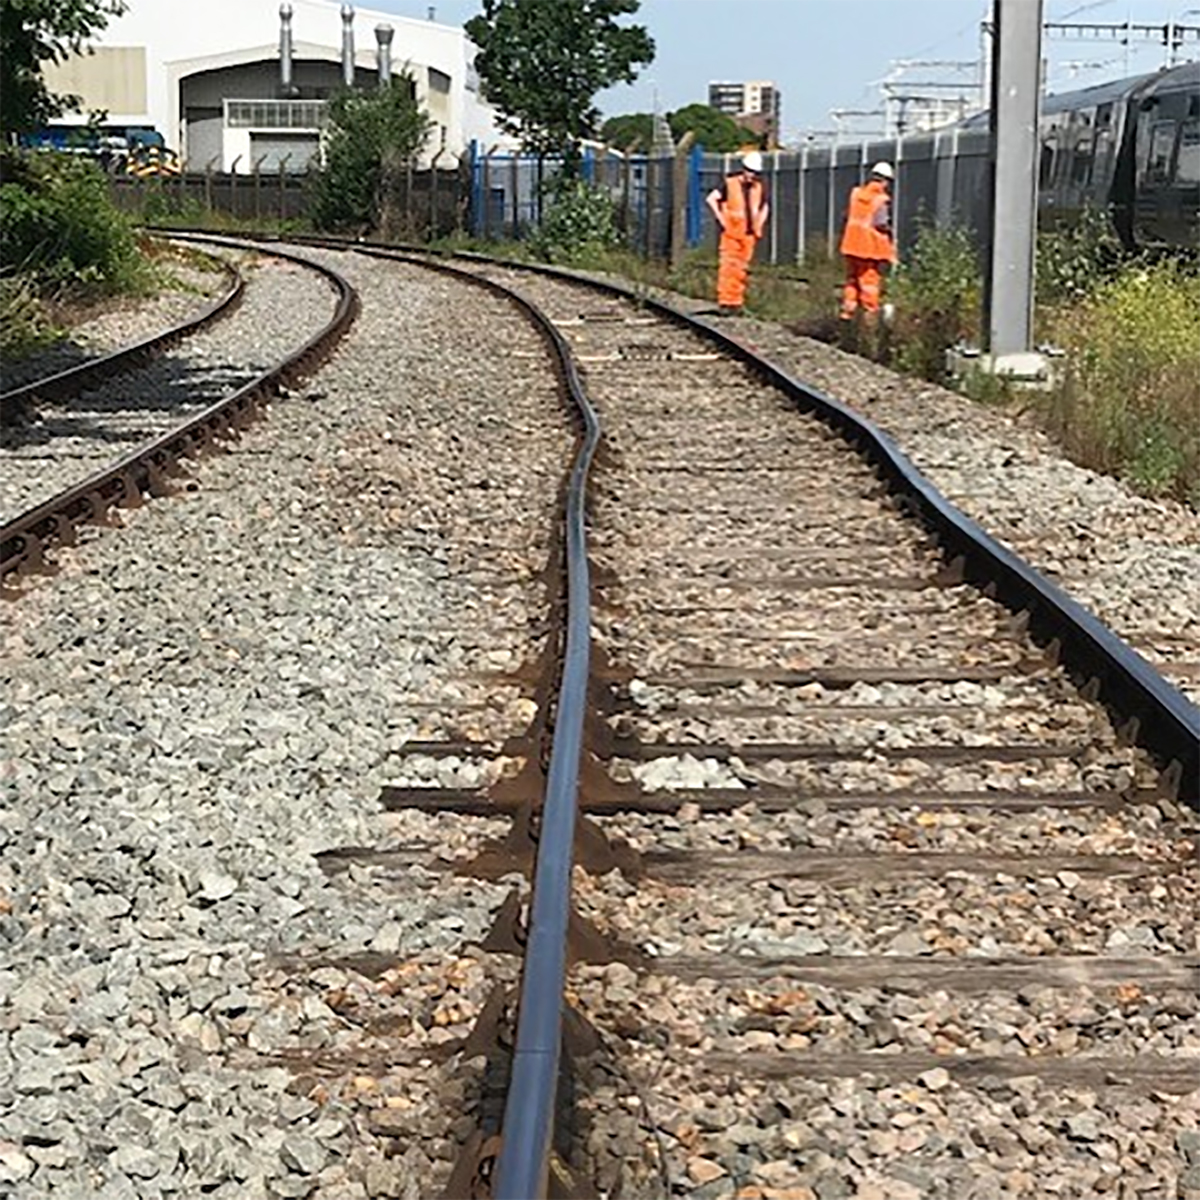 Công nhân đường sắt Anh kiểm tra một đoạn bị cong vì nhiệt độ cao trong ảnh công bố ngày 19/8. Ảnh: Network Rail.